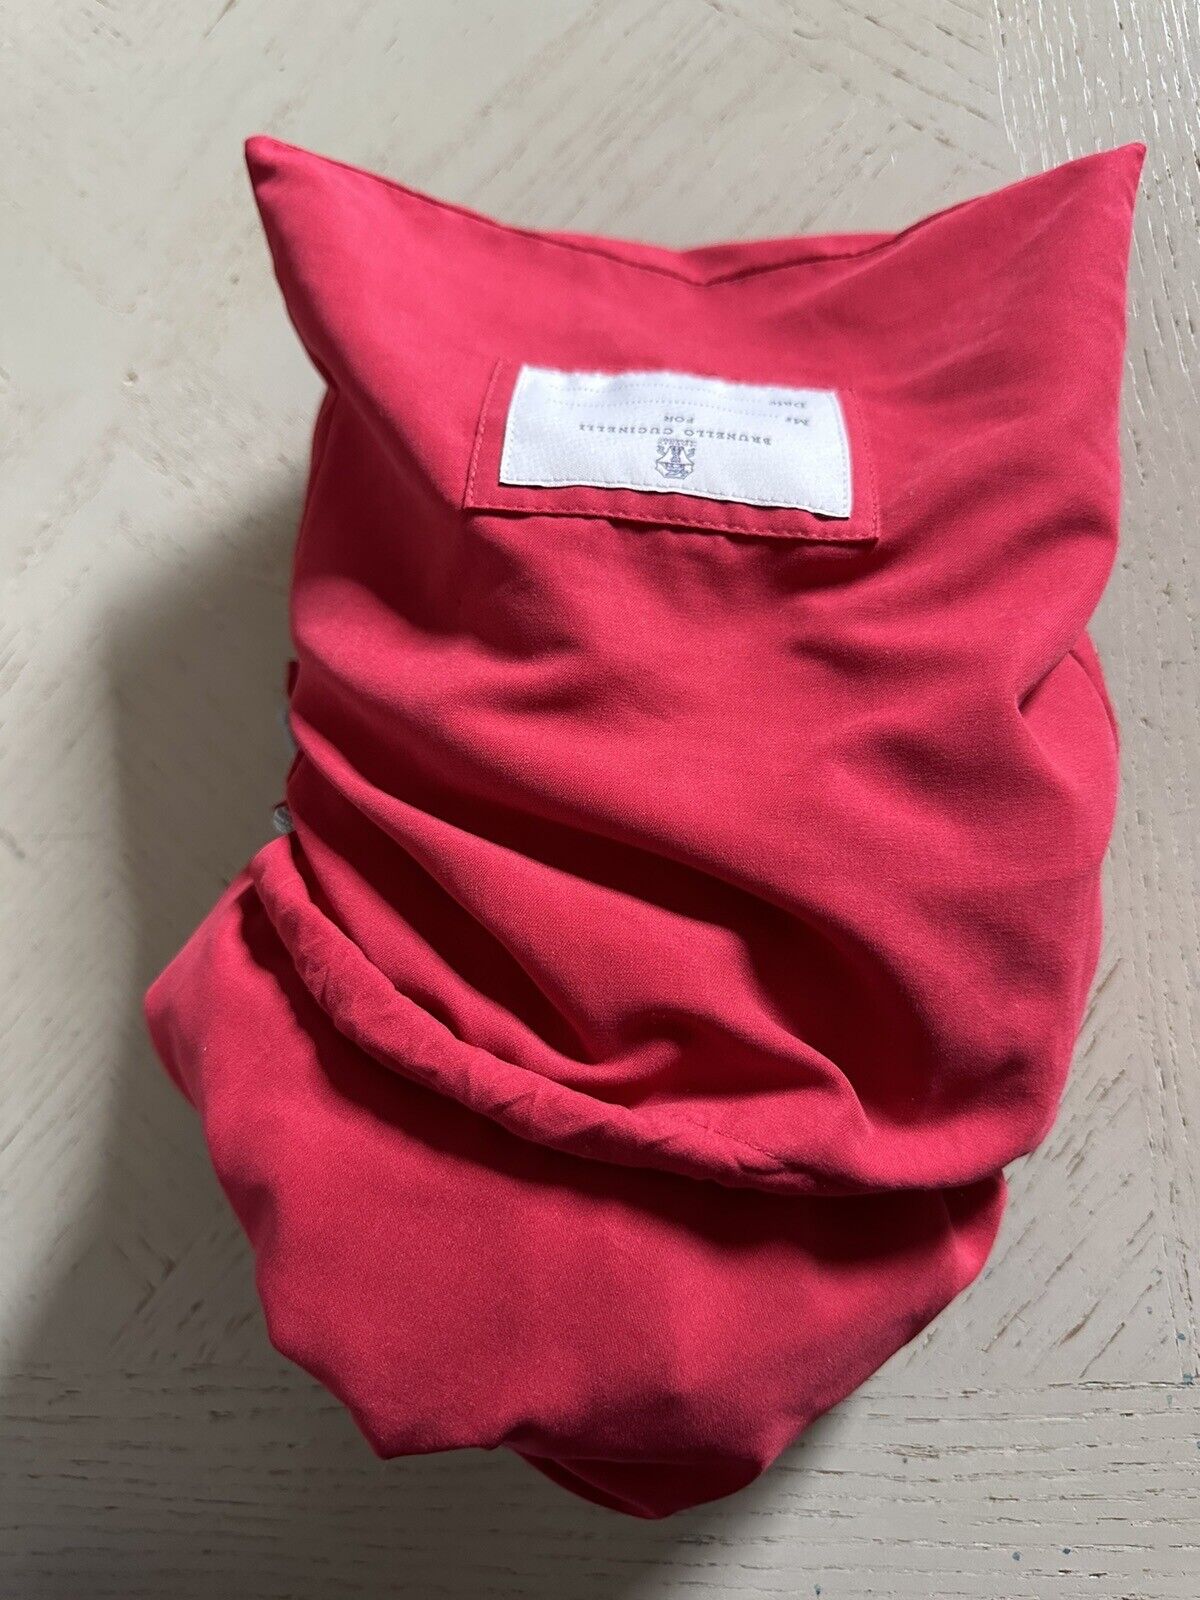 Neu mit Etikett: 550 $ Brunello Cucinelli Herren-Badeshorts mit Kordelzug, Farbe Rot, M, Italien